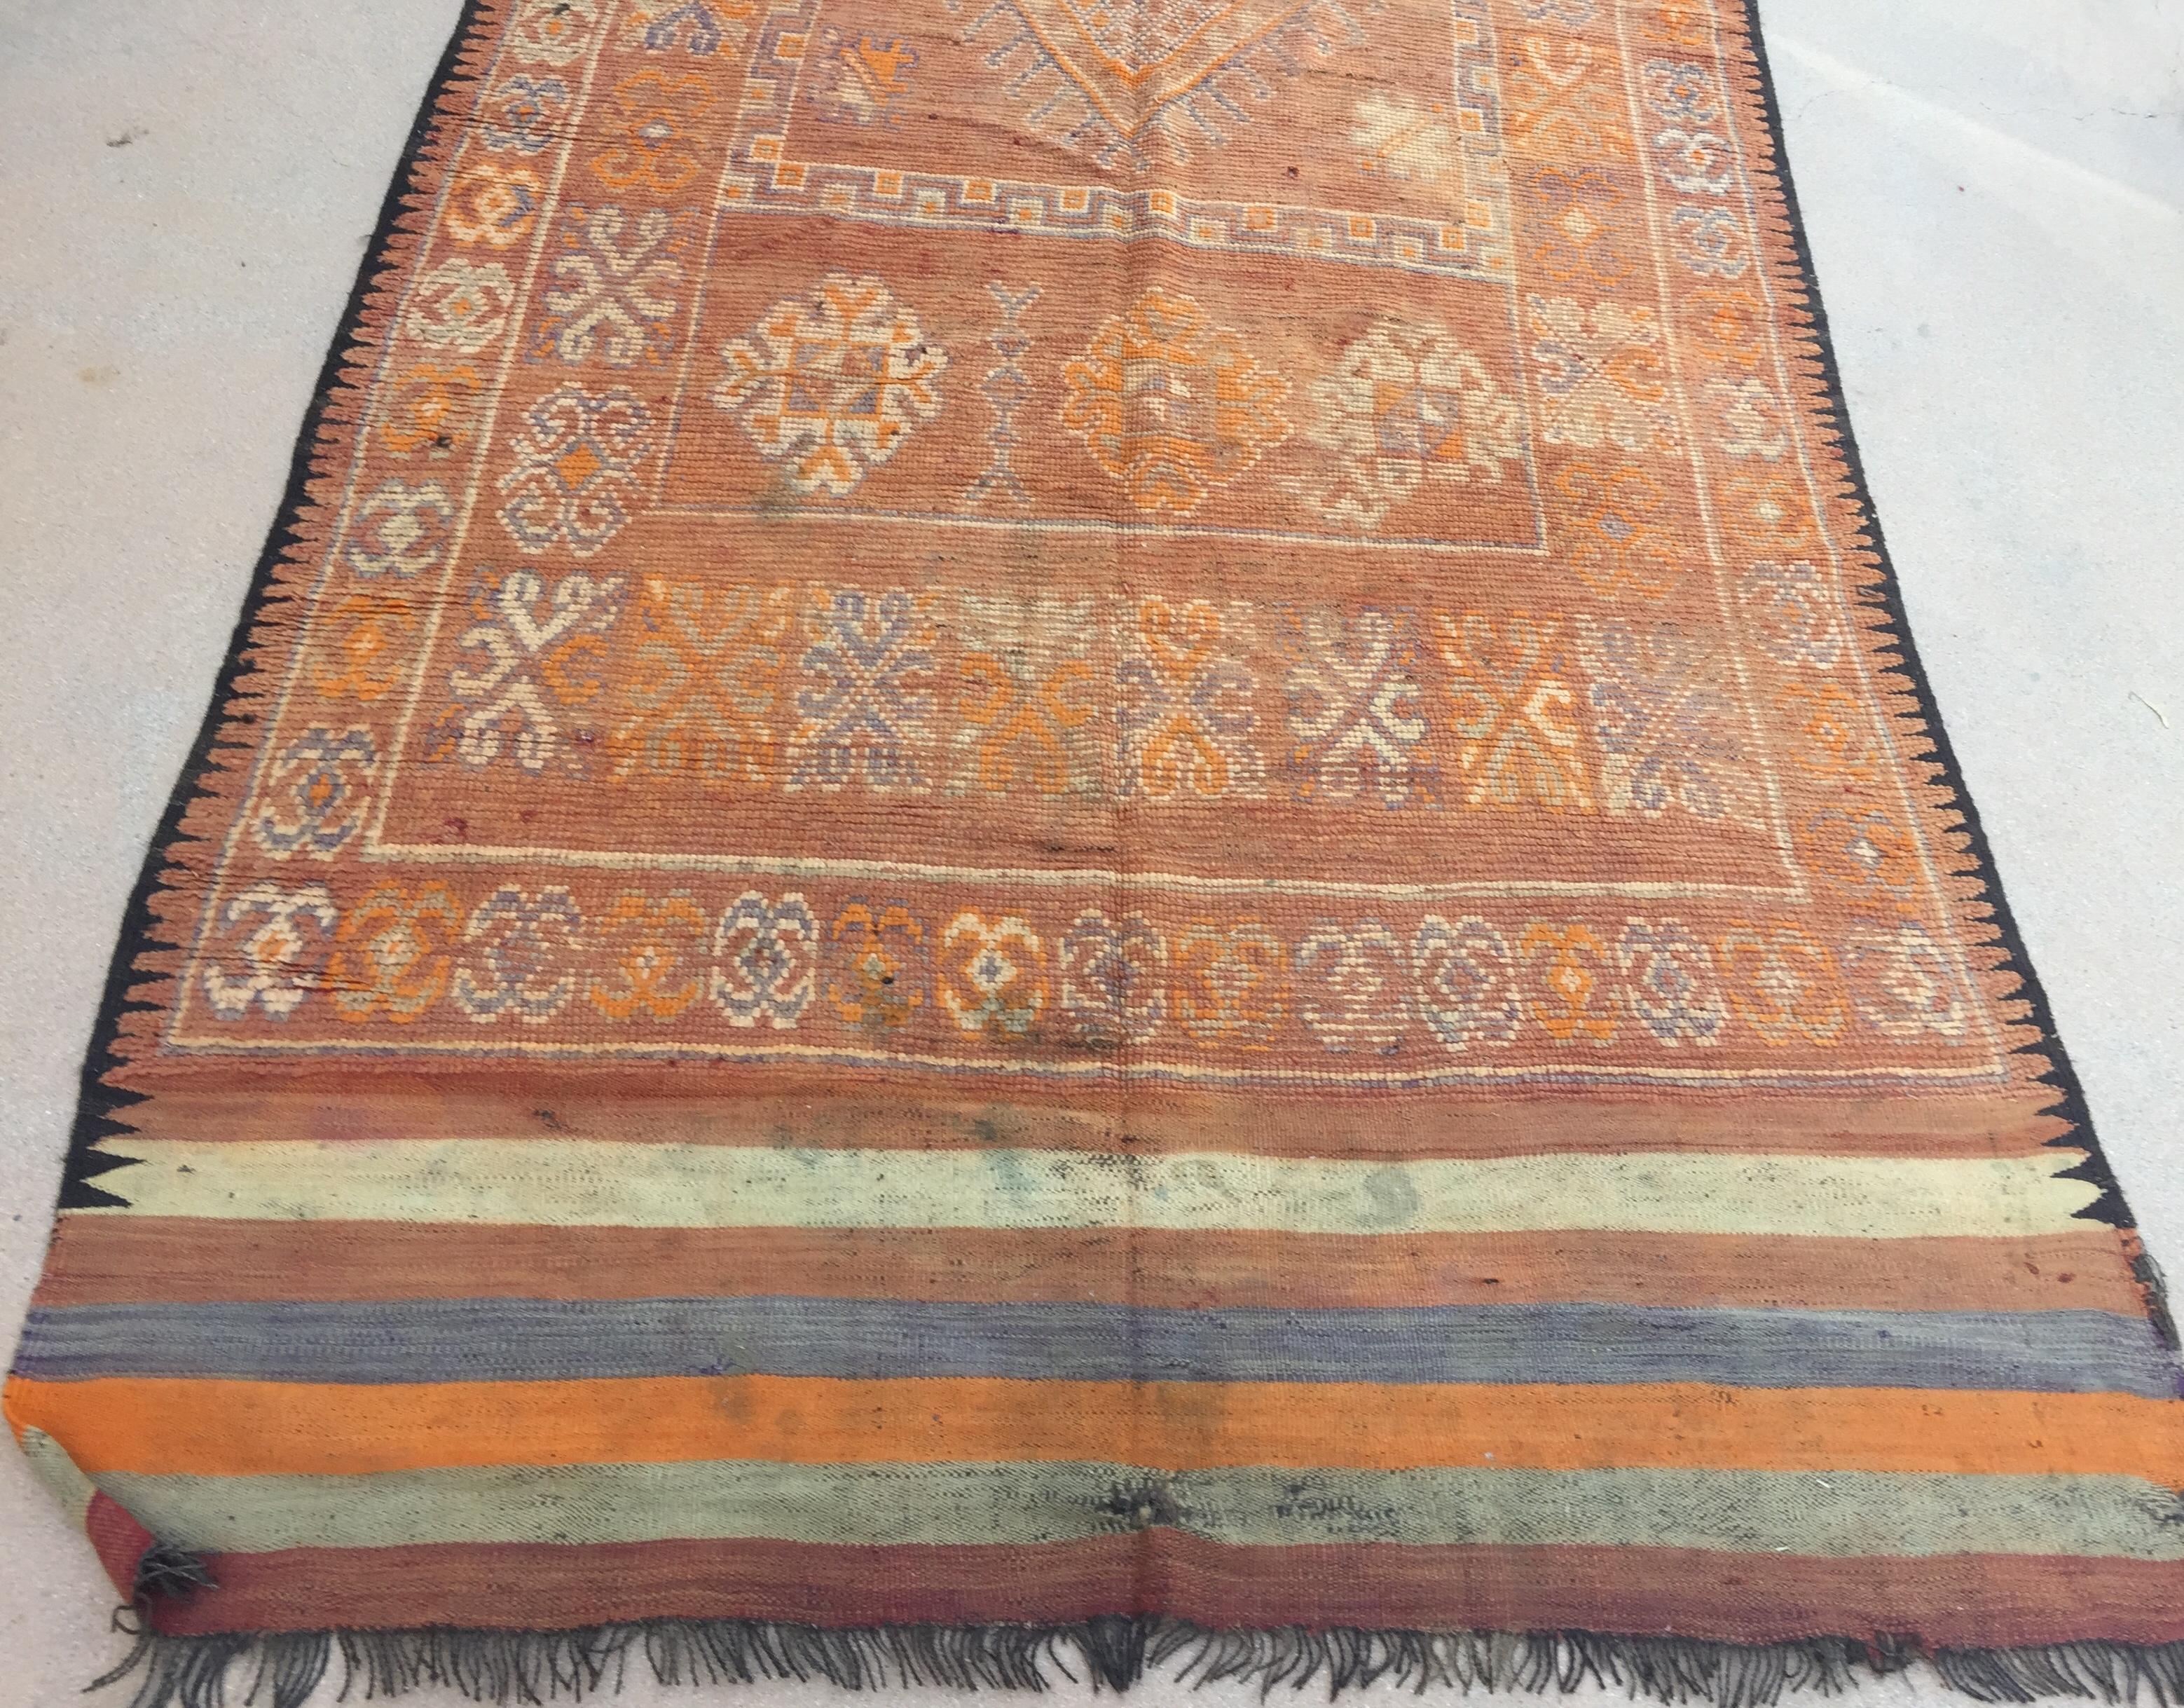 1960er Jahre große handgewebte Vintage marokkanischen Berber Stammes-Teppich, schön gealtert und verblasst mit orange und blau cors.Midcentury marokkanischen Bereich Teppich mit Stammes-geometrische Design auf blauem backgroundHandwoven von den